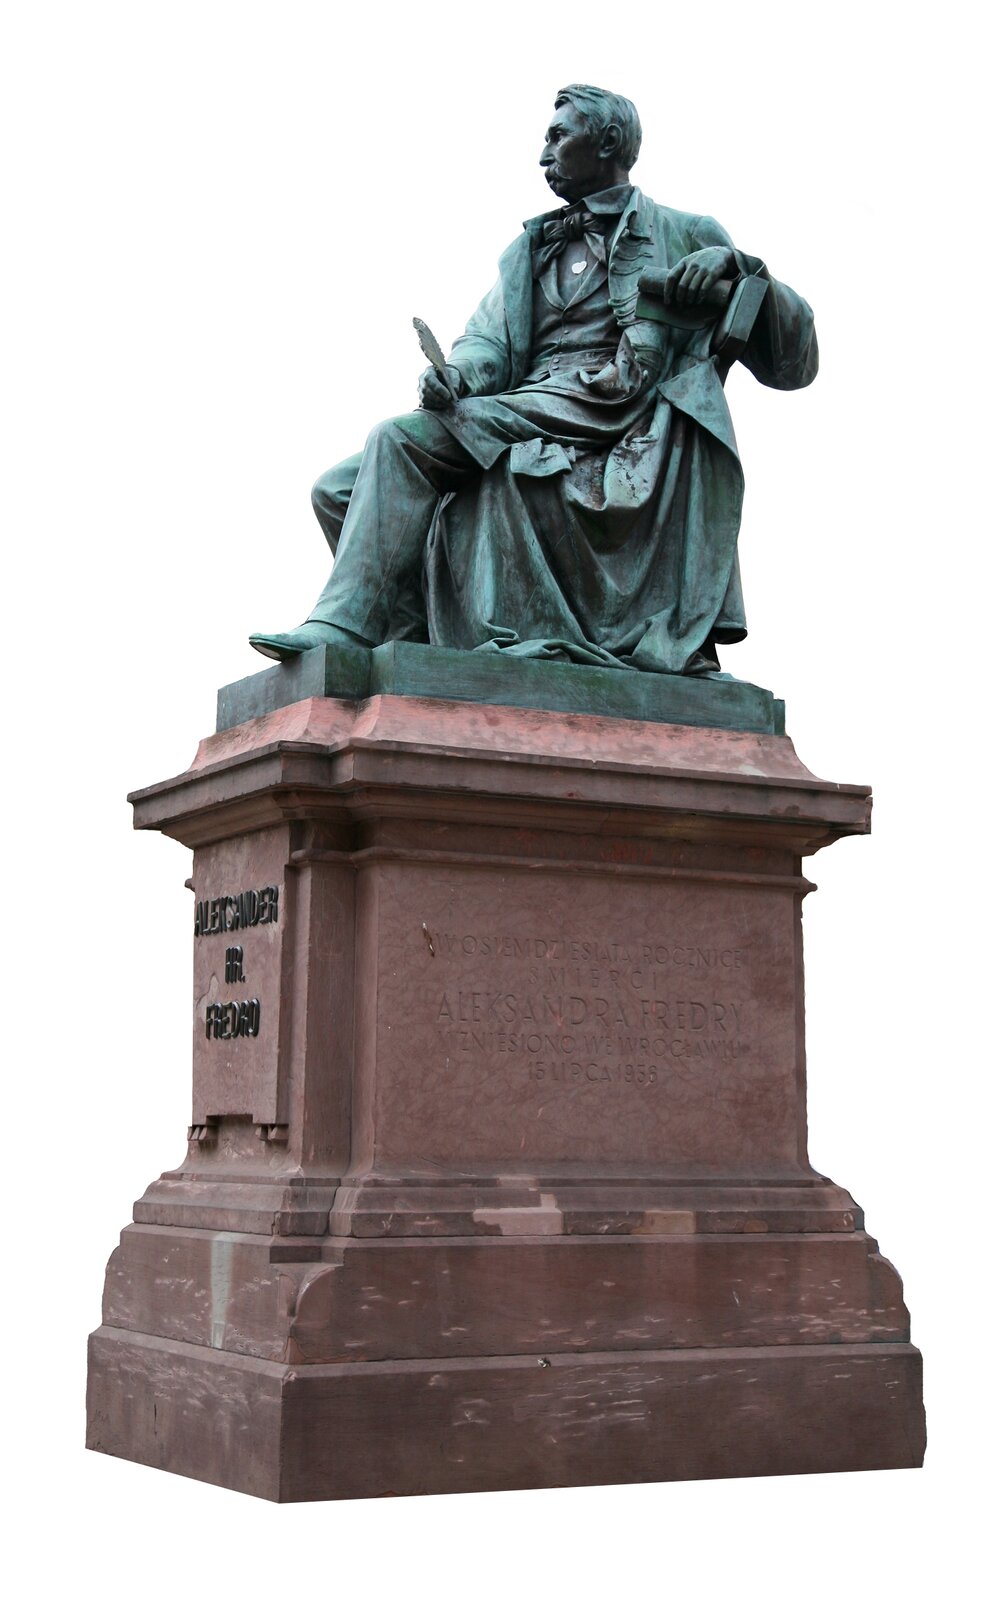 Zdjęcie przedstawia prawy półprofil pomnika siedzącego na krześle pisarza, który w jednej dłoni trzyma pióro, a w drugiej rolkę papieru. Rzeźba ustawiona jest na wysokim, marmurowym cokole. Na nim od frontu znajduje się napis: Aleksander hr. Fredro. Na prawym boku cokołu wygrawerowano: W osiemdziesiątą rocznicę śmierci Aleksandra Fredry wzniesiono we Wrocławiu 15 lipca 1956.